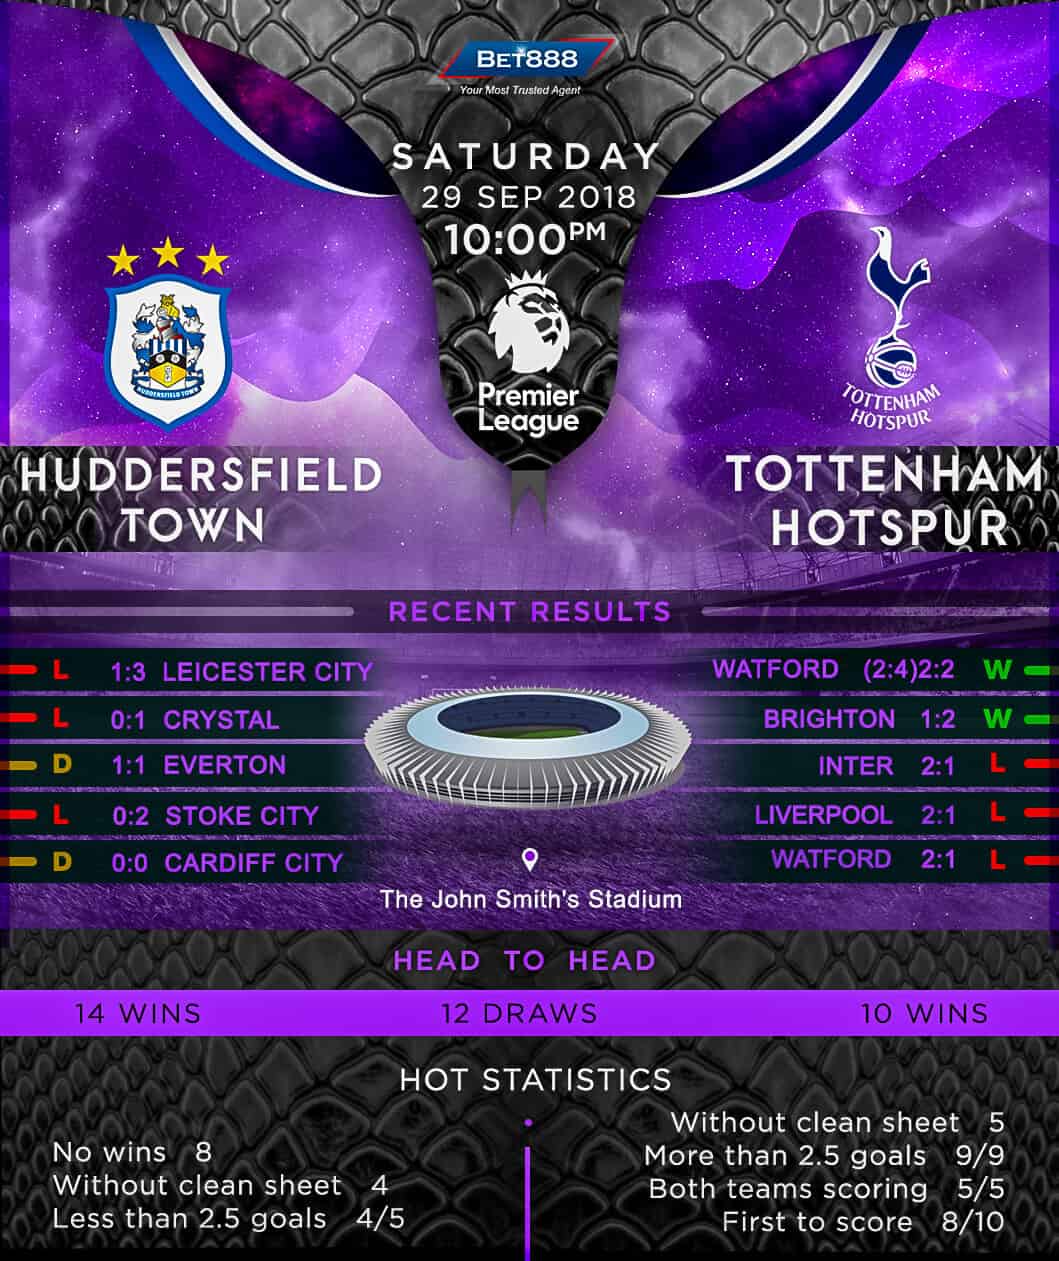 Huddersfield Town vs Tottenham Hotspur 29/09/18